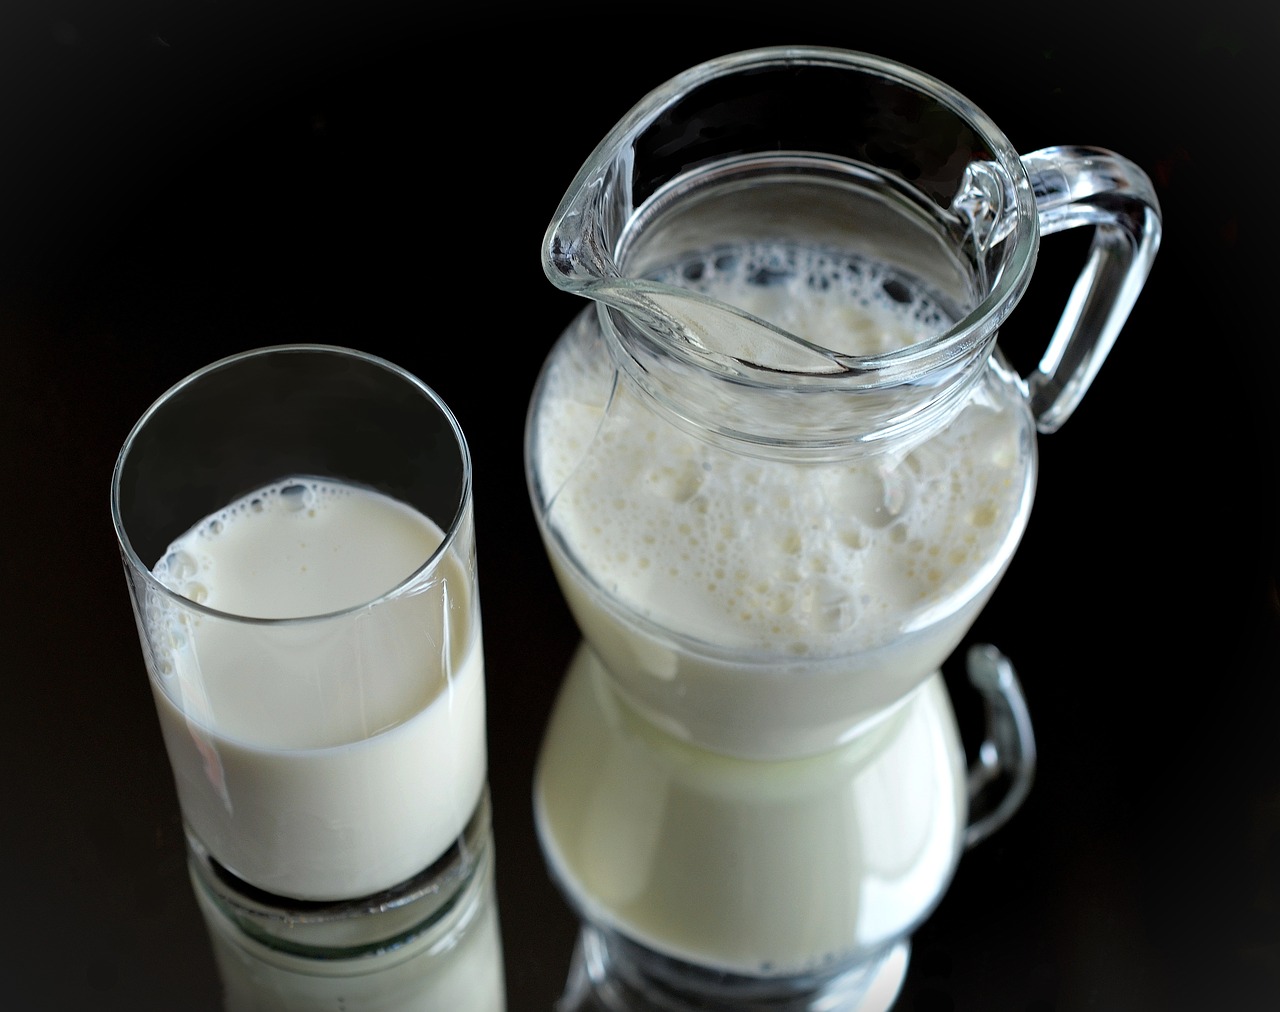 ¿Cuáles son los beneficios de la leche fresca?